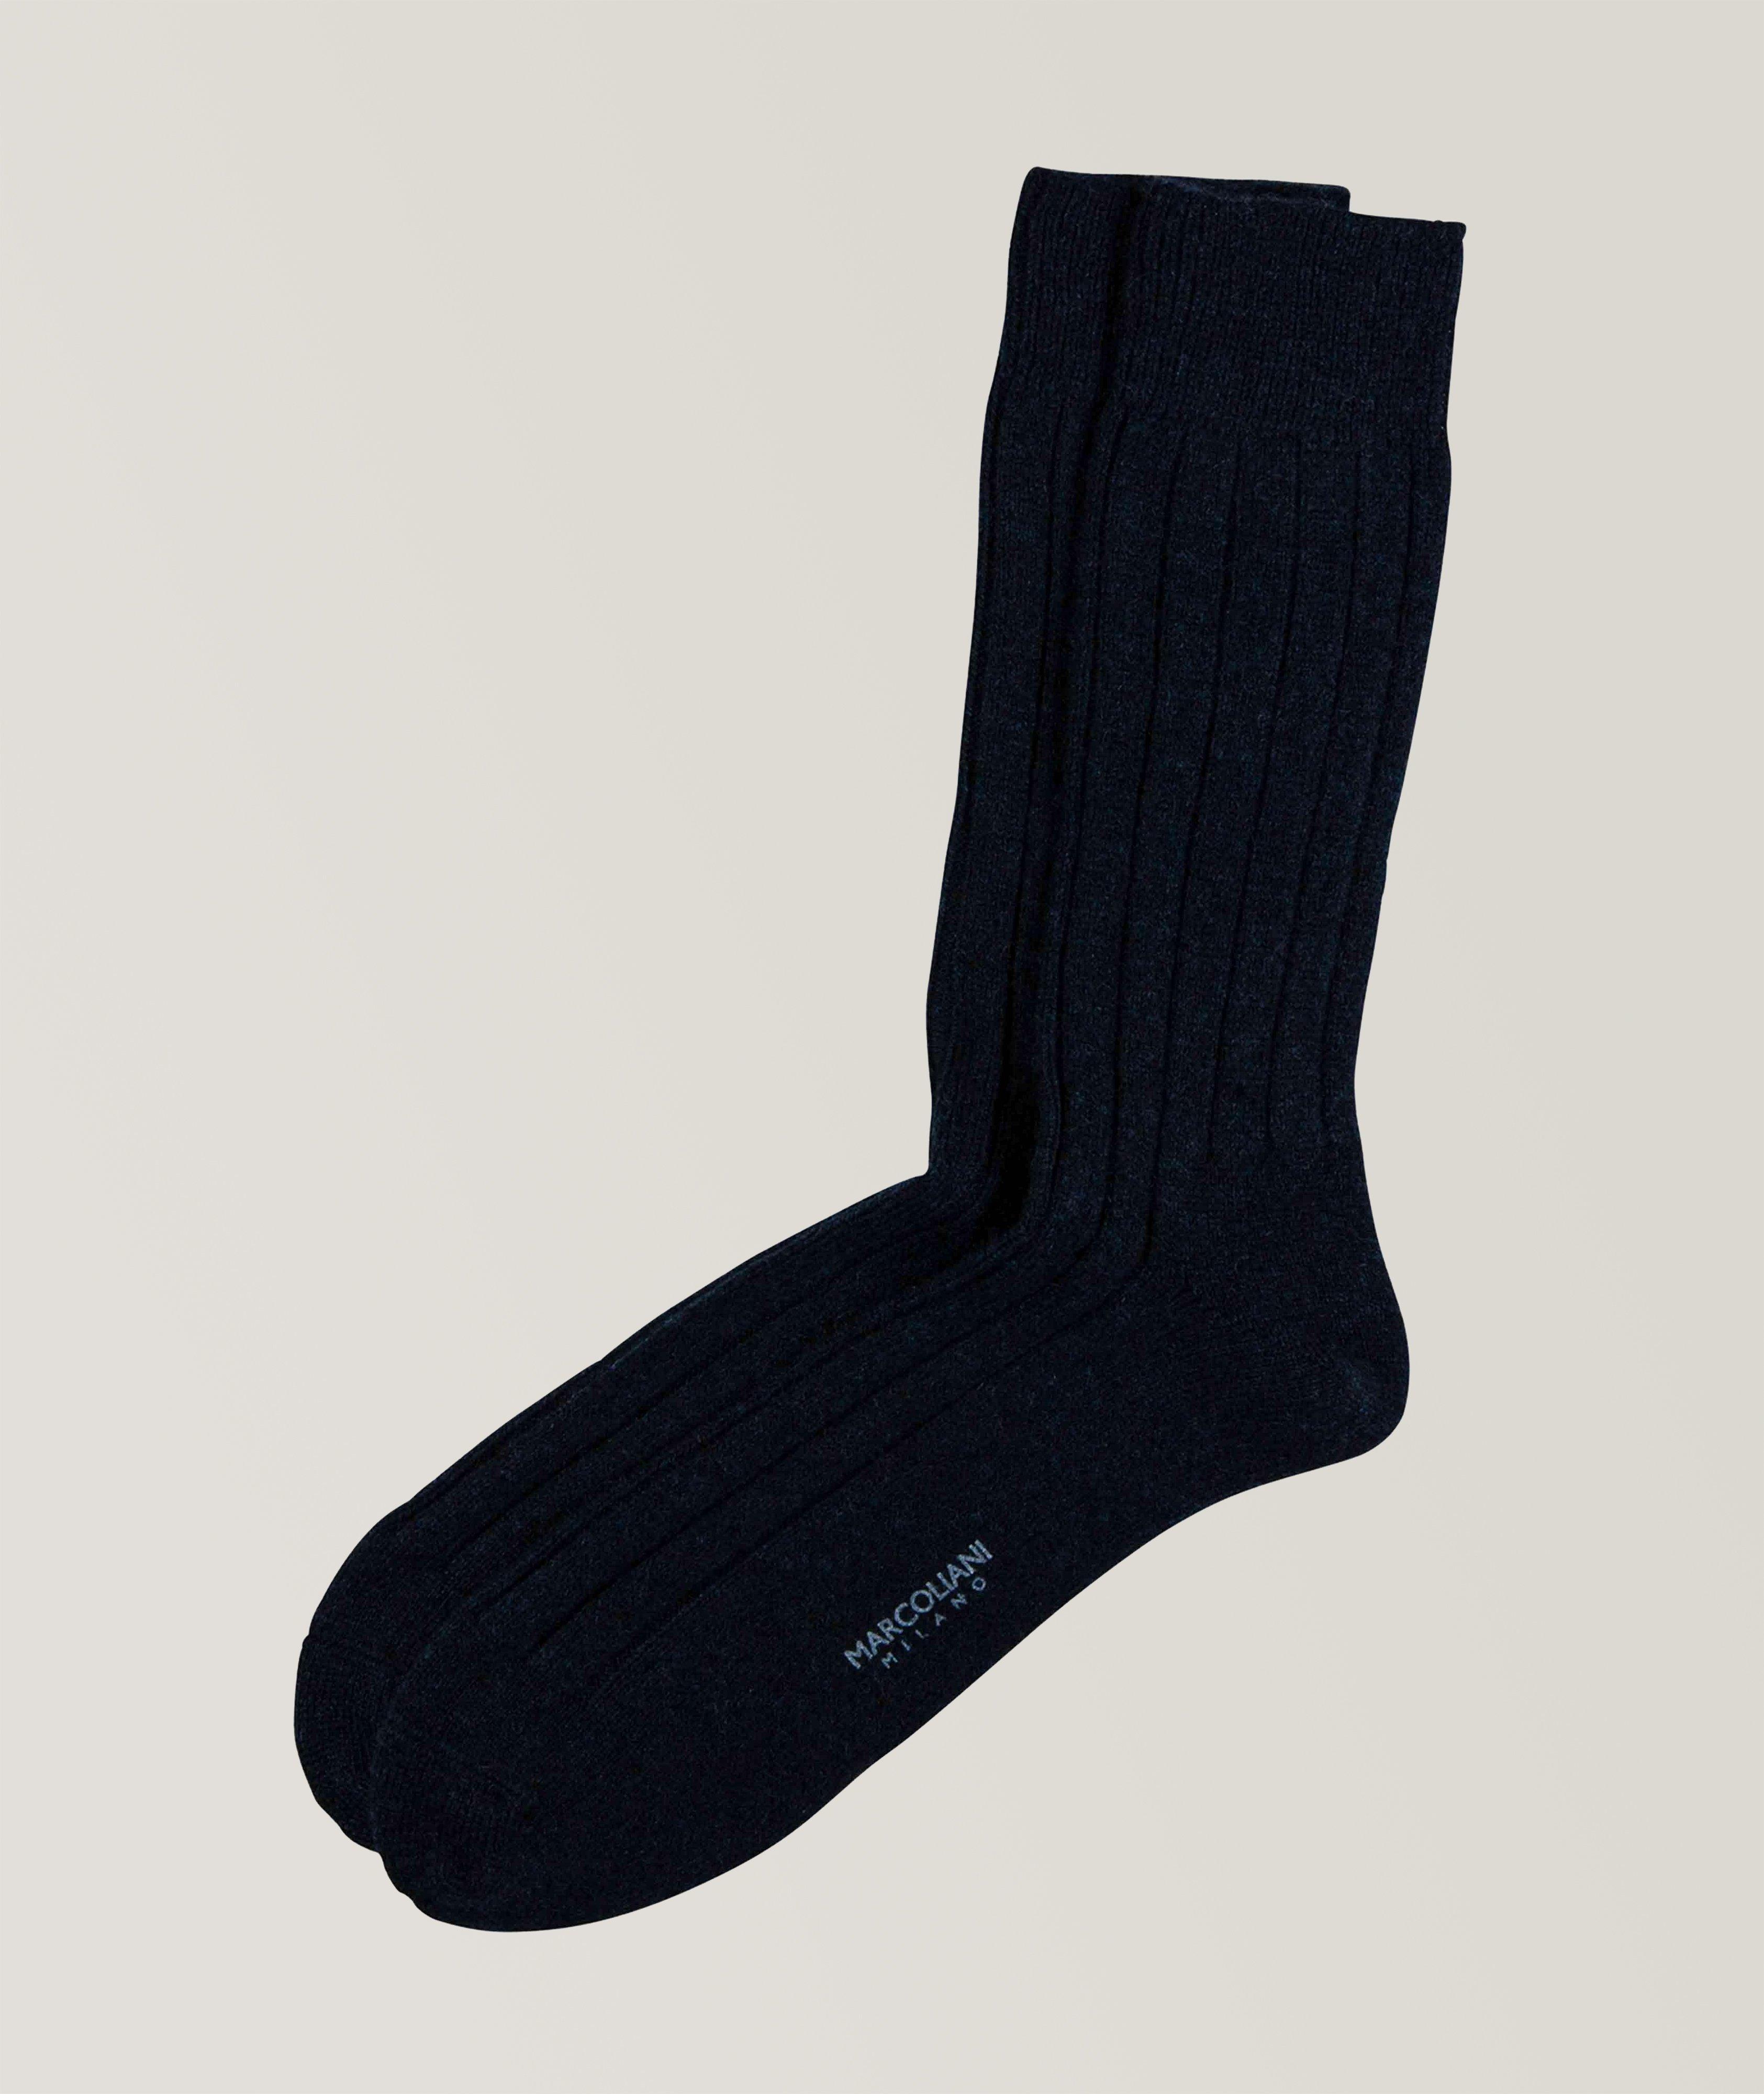 Cashmere Blend Socks image 0